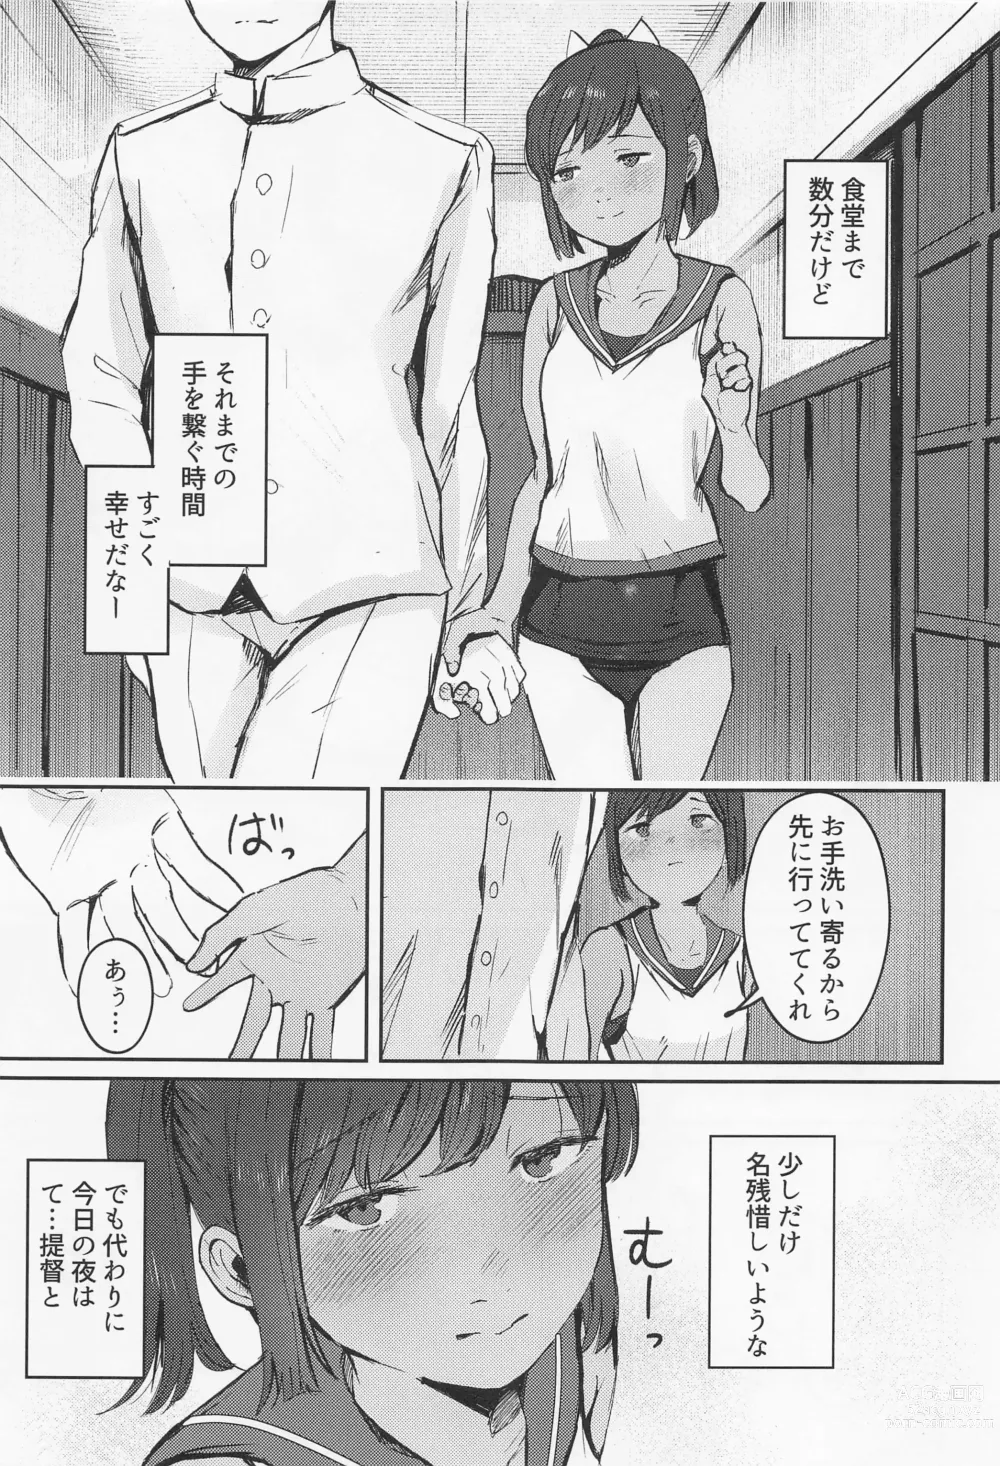 Page 4 of doujinshi 401 Ichaicha Biyori